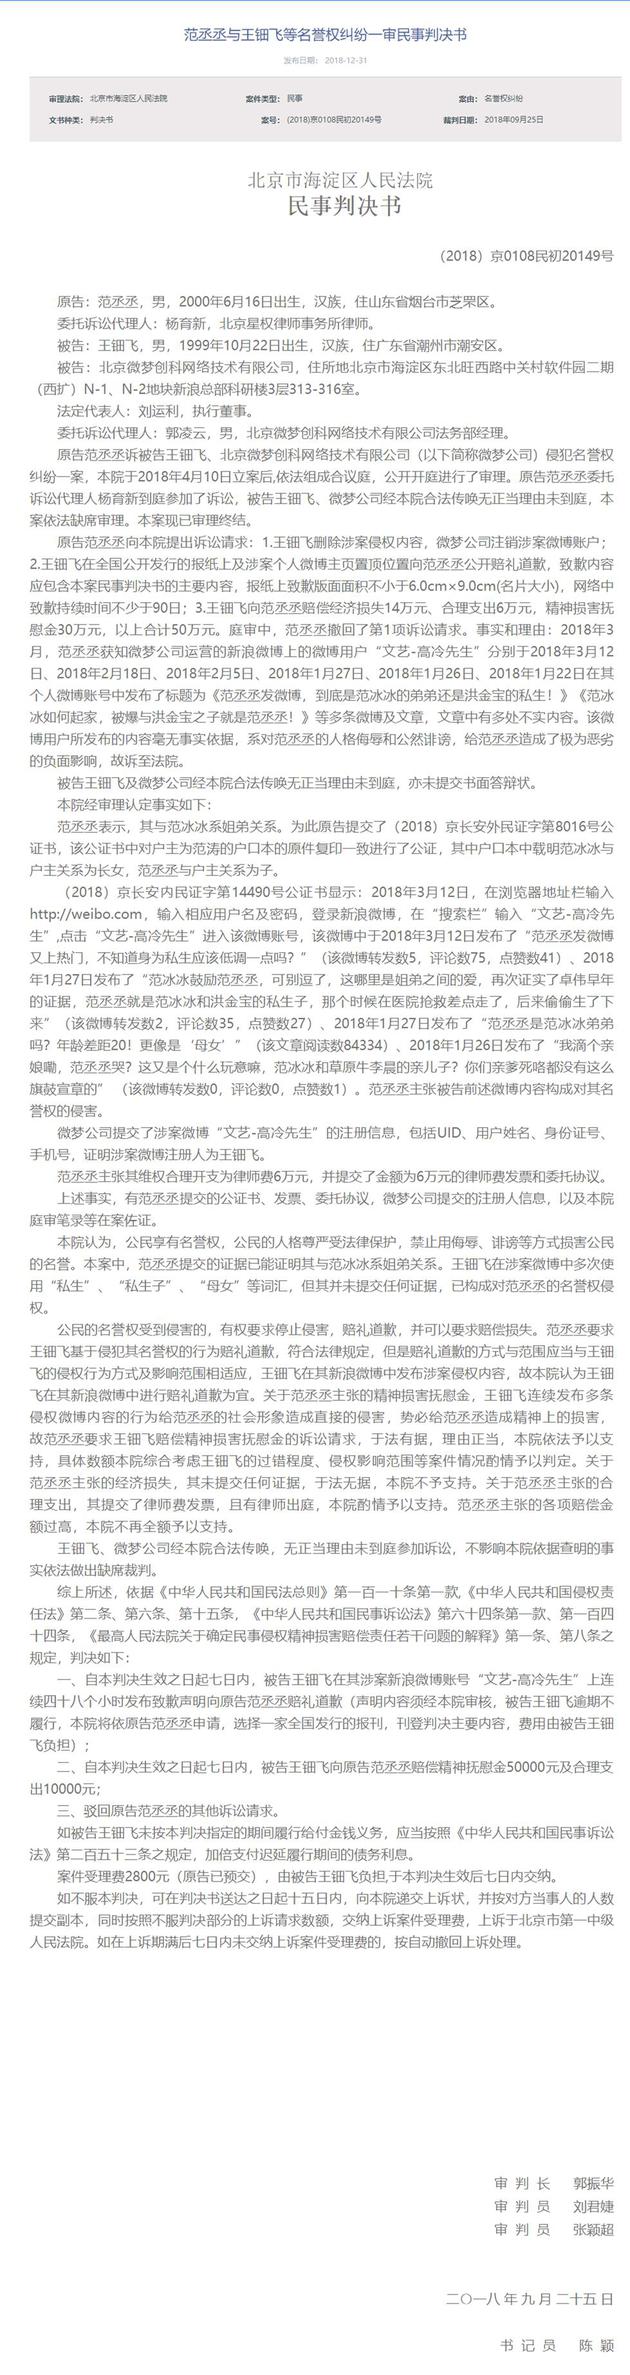 北京法院审判信息网公布的法律文书